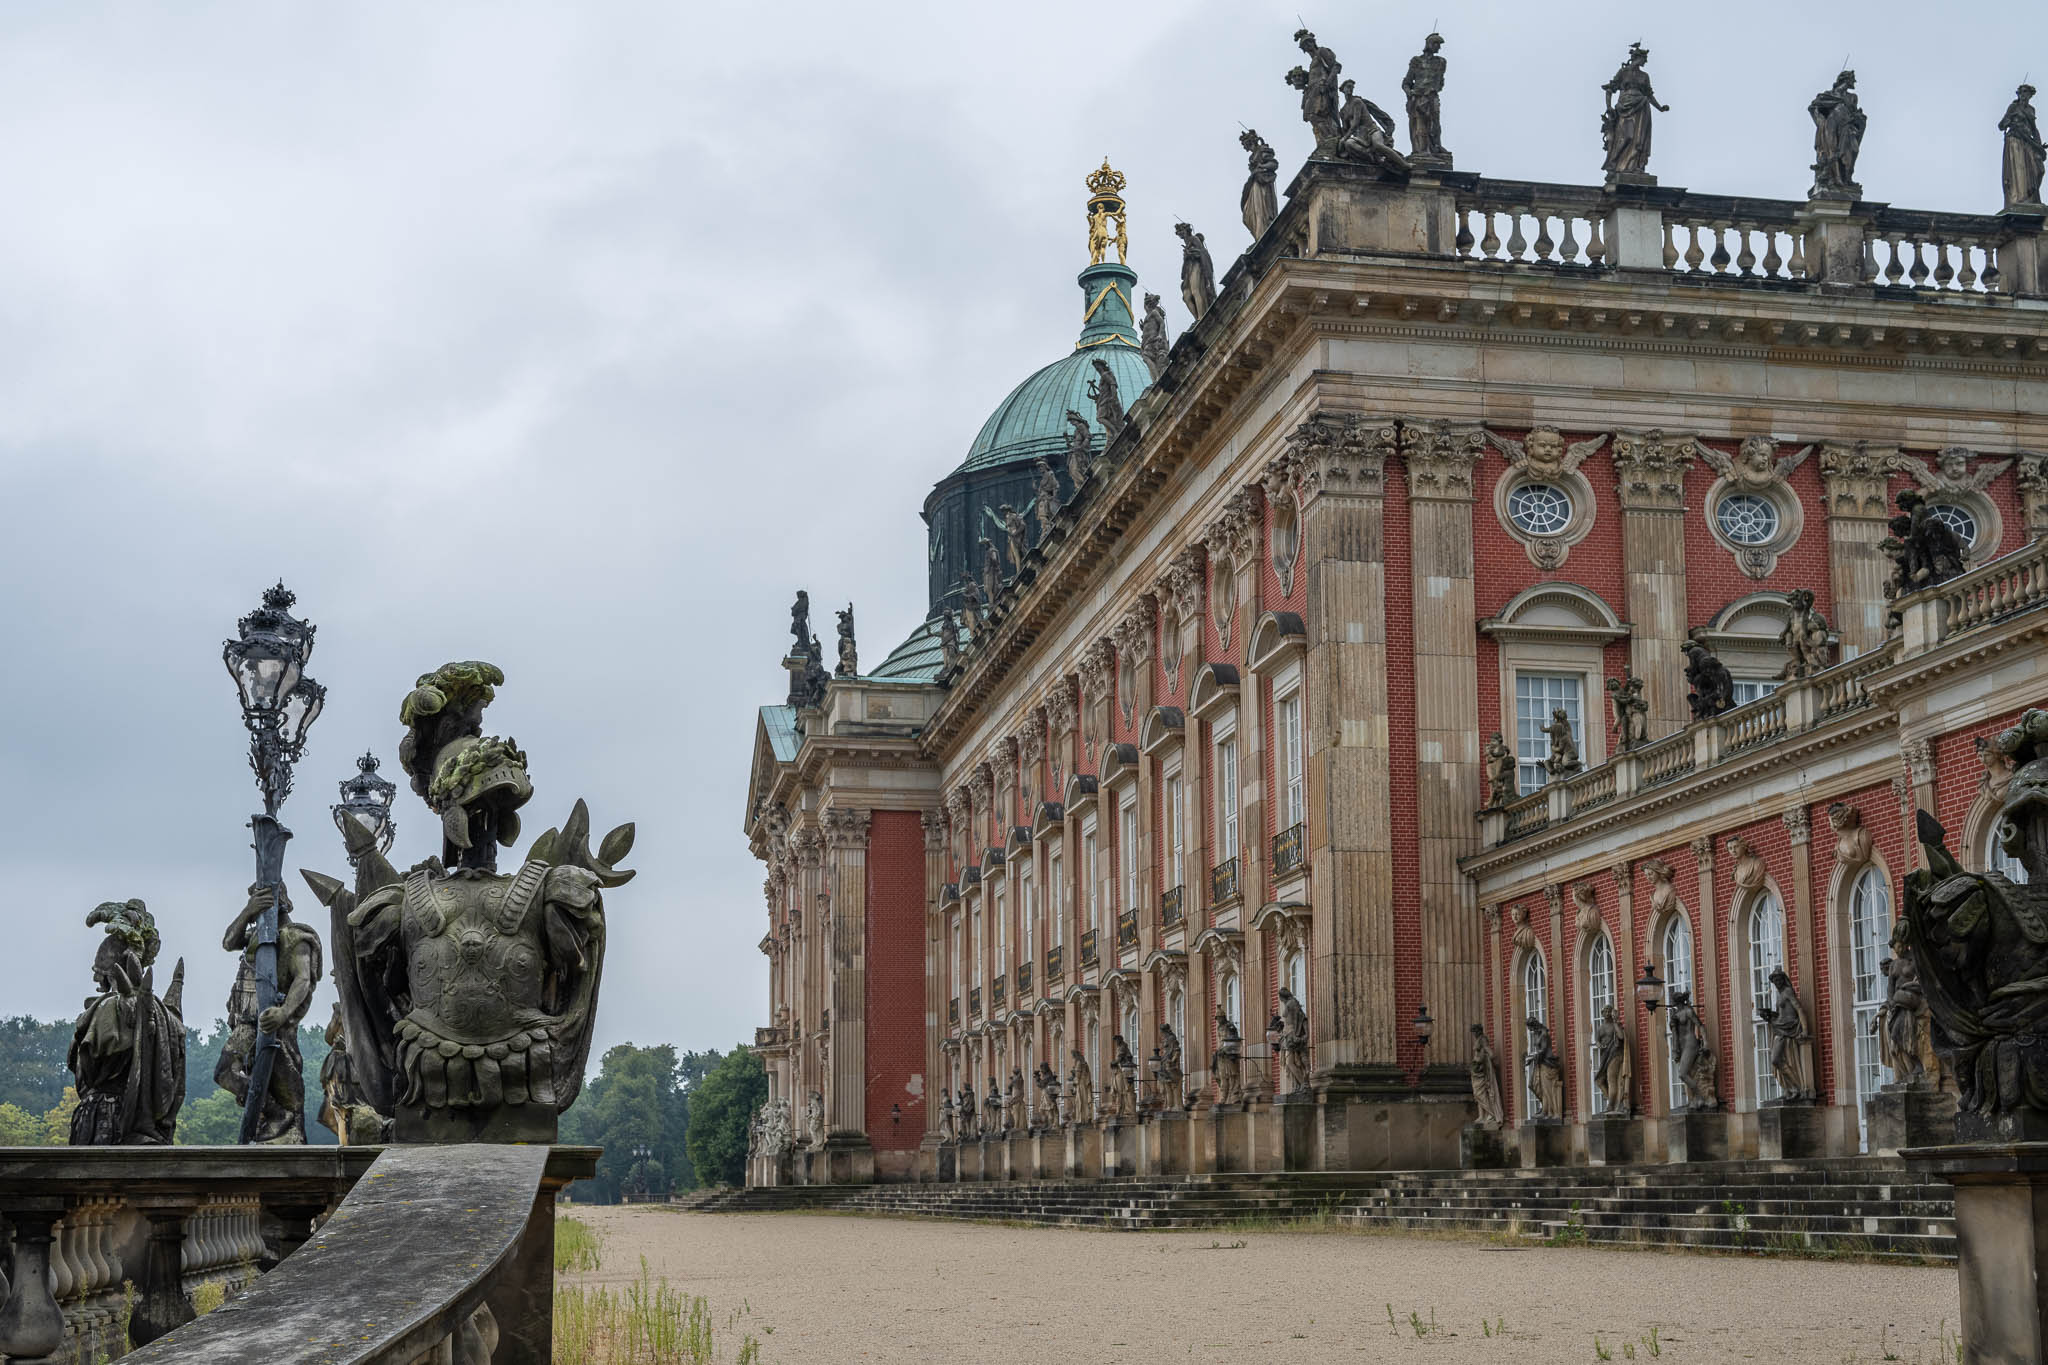 Das Neue Palais in Potsdam, aufgenommen mit dem Nikkor Z 40 mm f/2